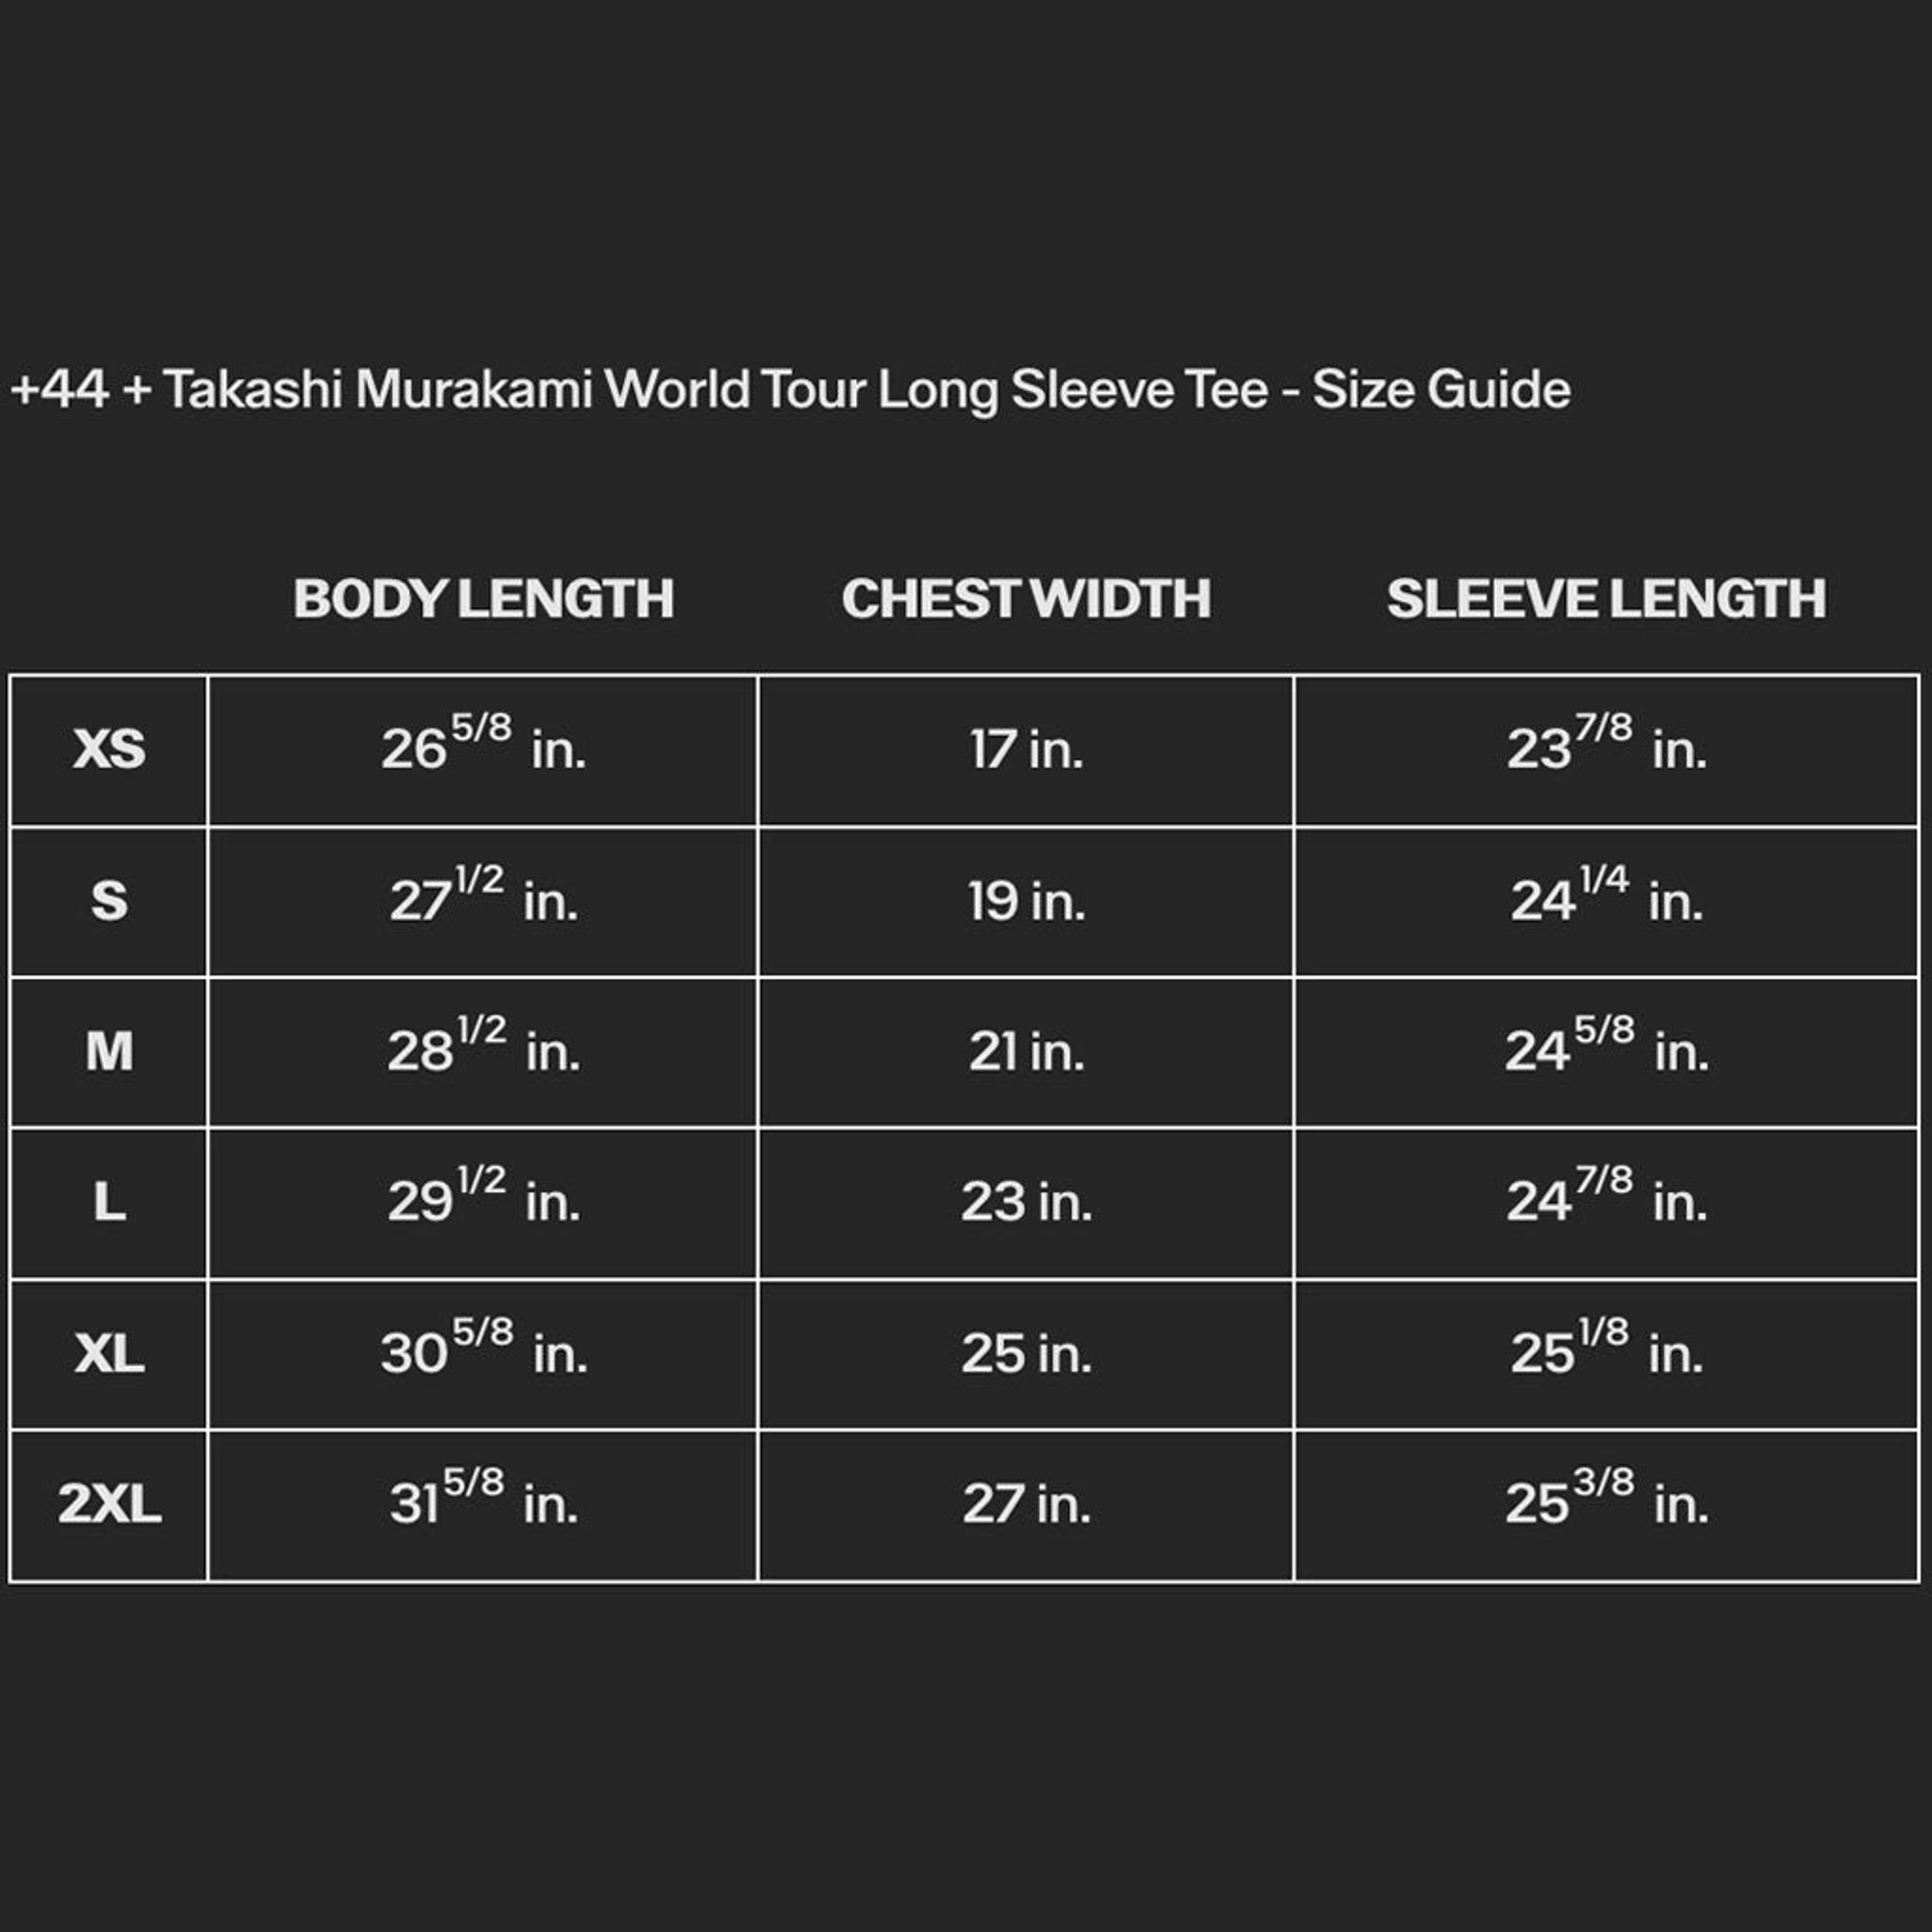 Alternate View 12 of +44 + Takashi Murakami World Tour Long Sleeve Tee